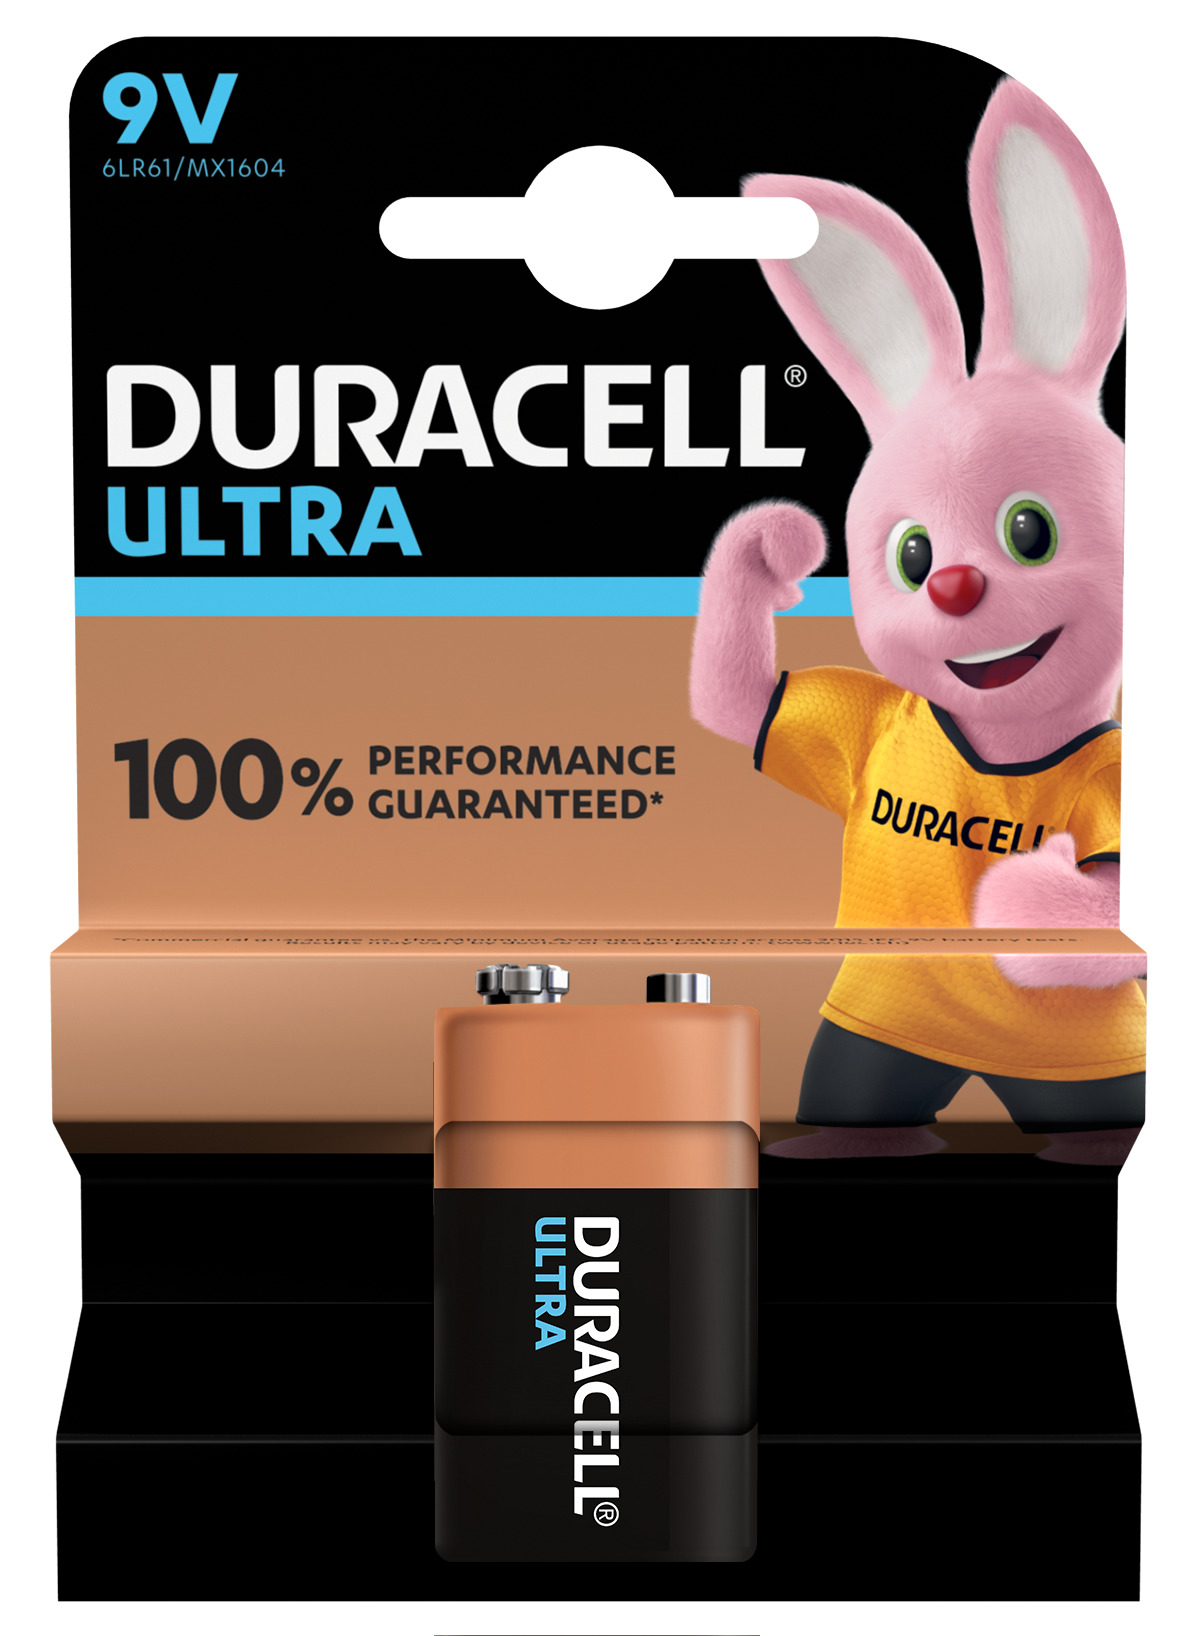 Pila 9v Duracell ultra power 1ud alcalina paquete de 1 15 6lr61 mx1604